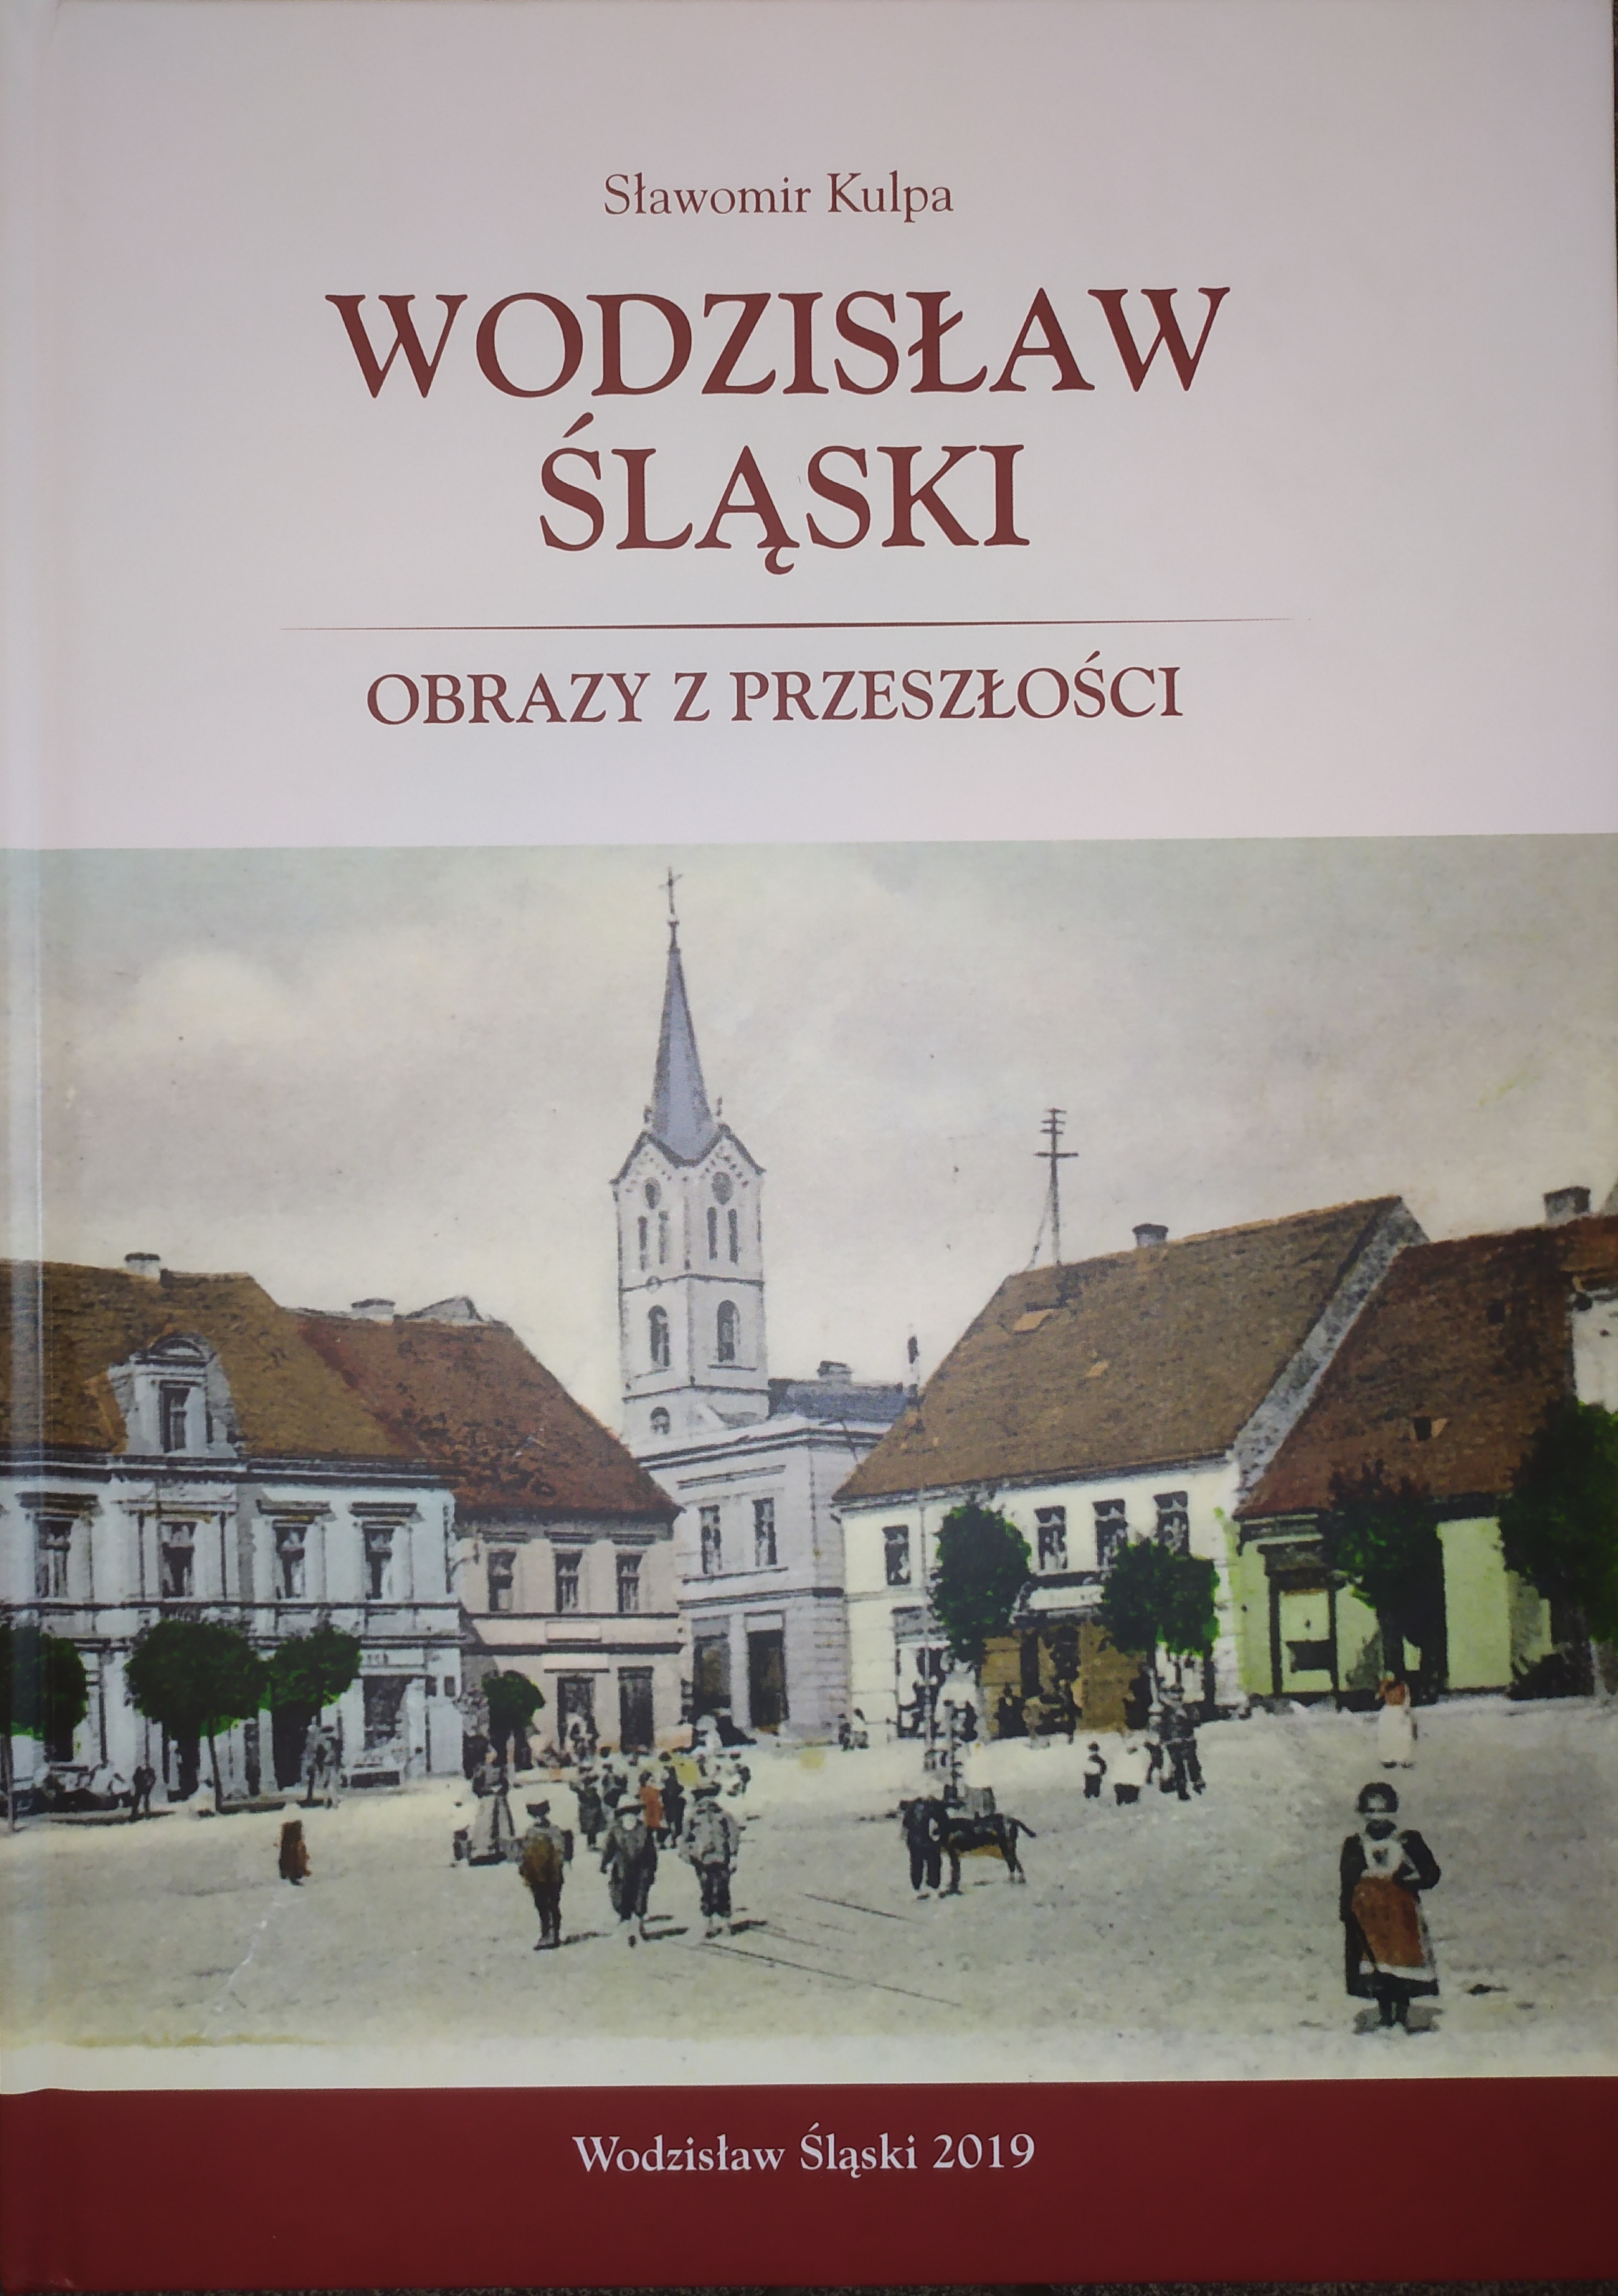 Wodzisław Śląski Obrazy z przeszłości.jpg